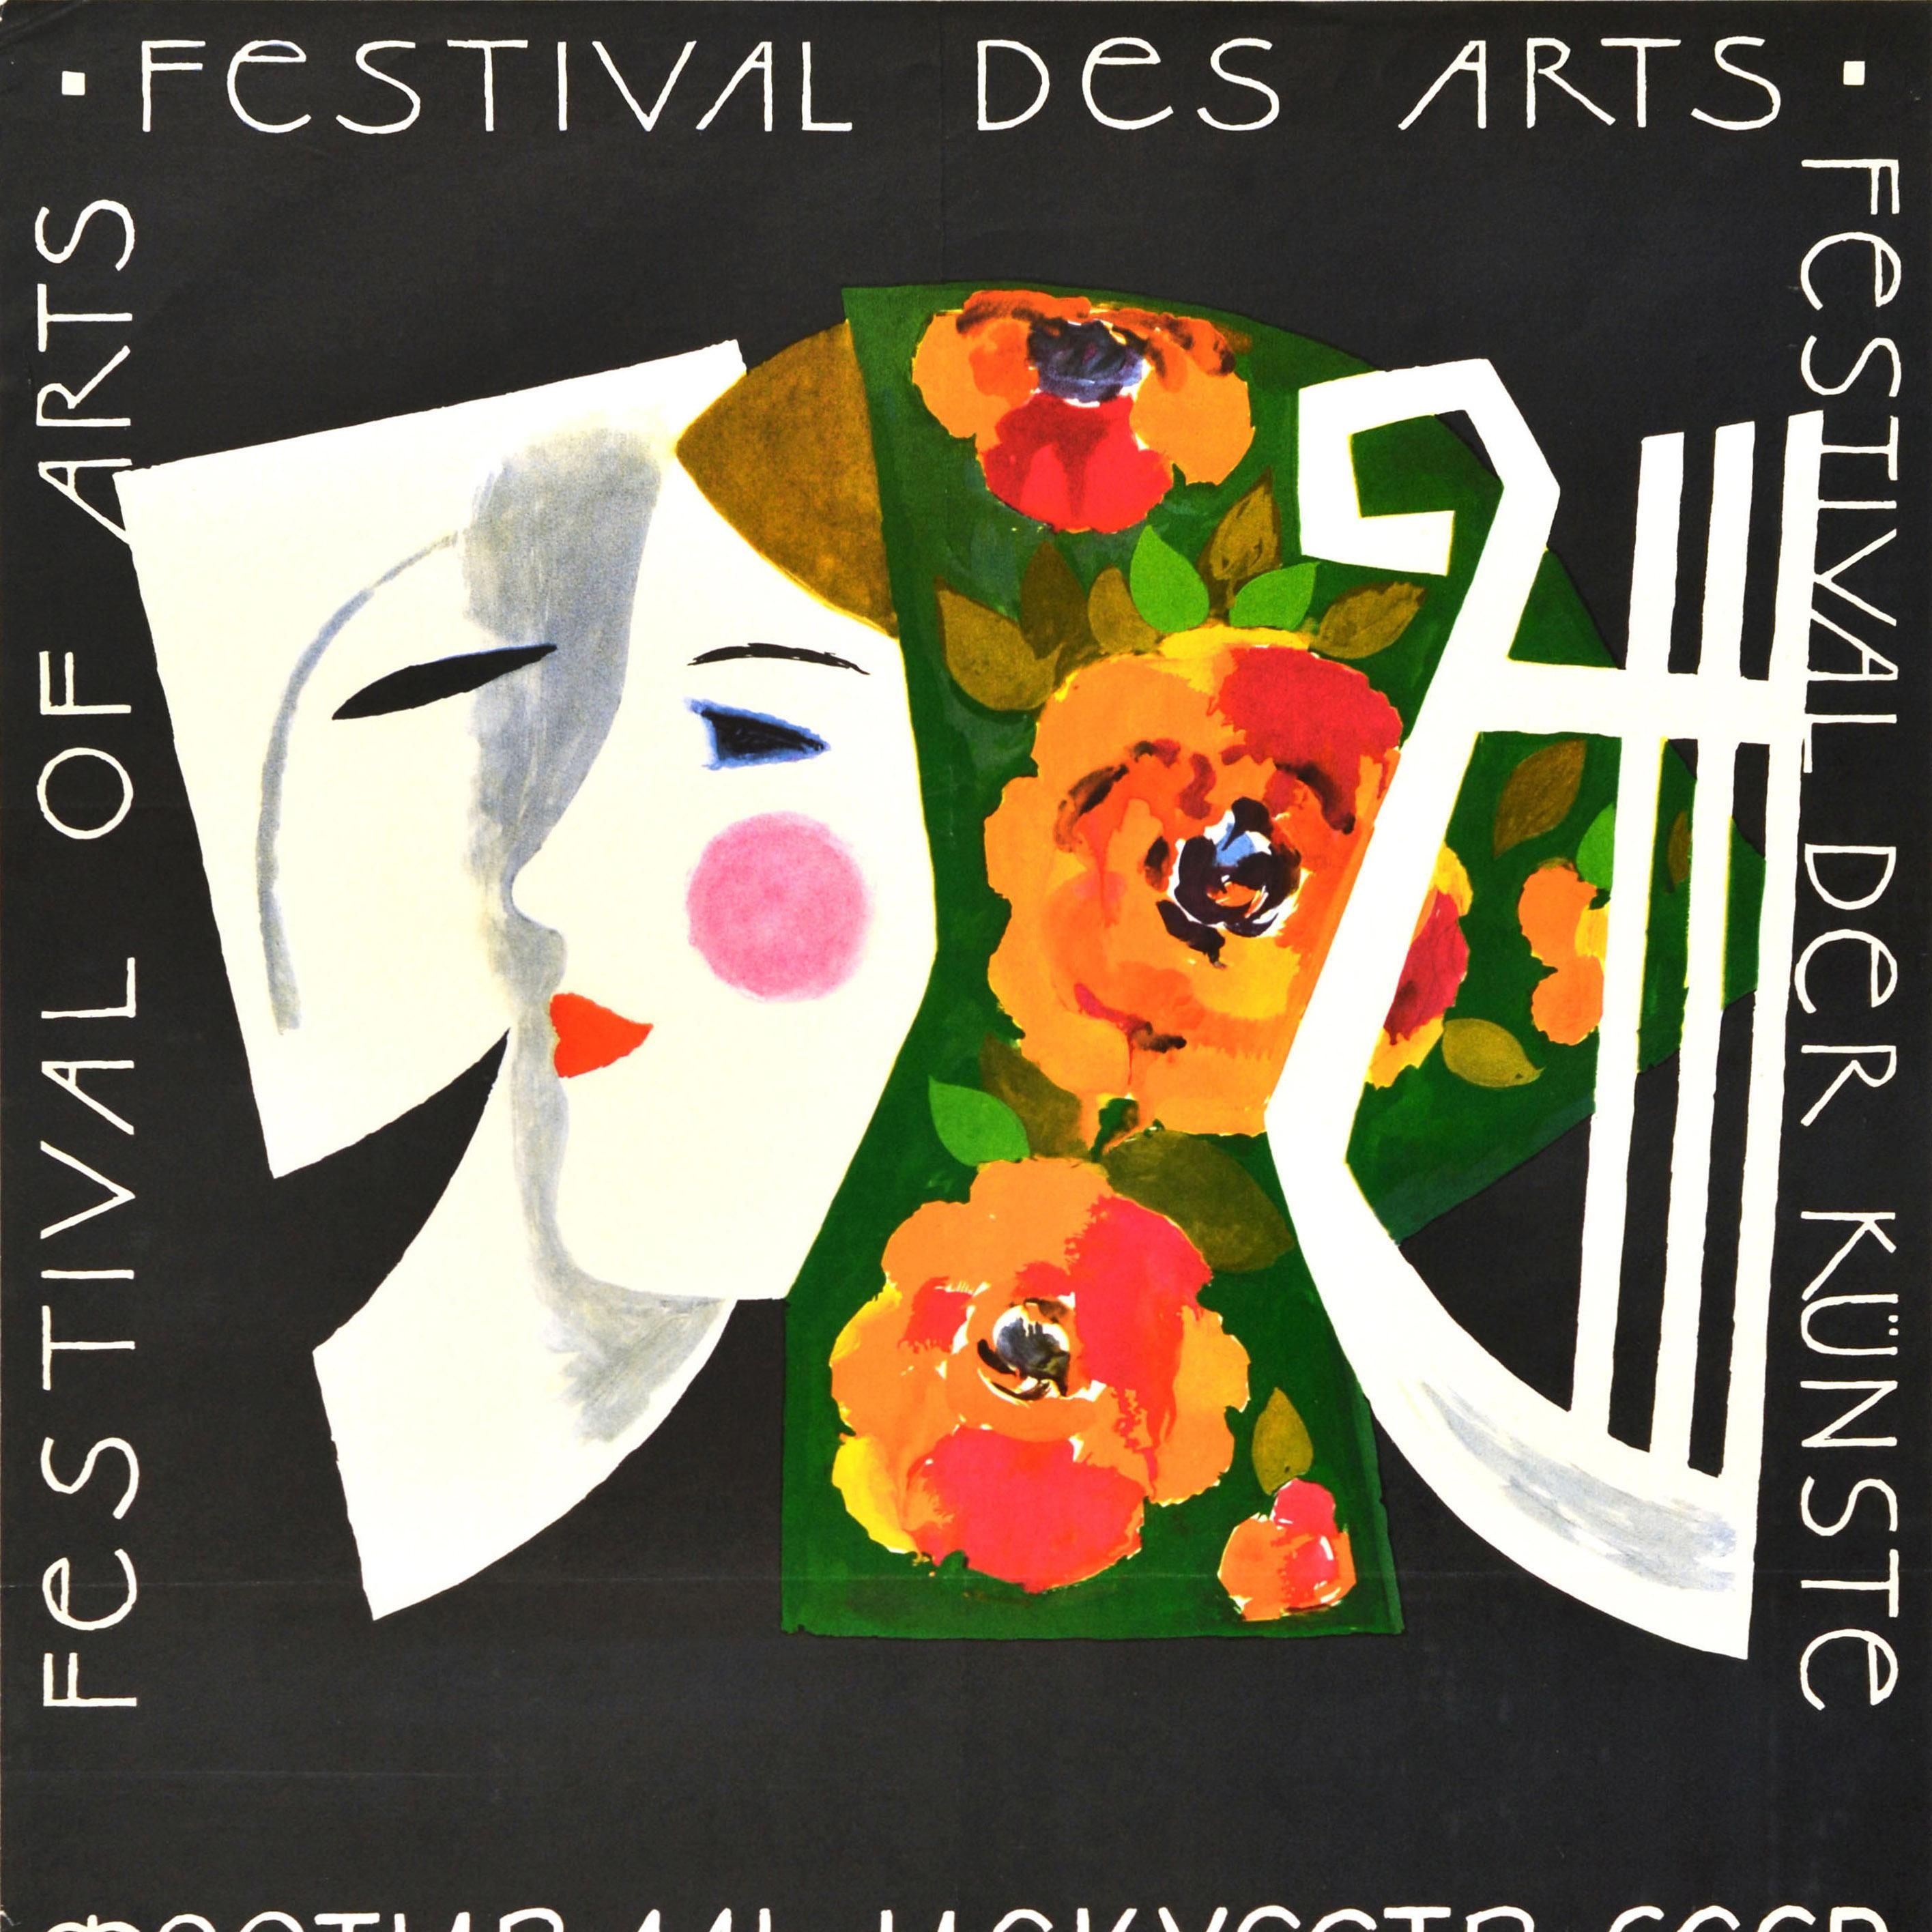 Originales sowjetisches Werbeplakat Festival of Arts Kunst-Design-Maske (Weiß), Print, von Unknown